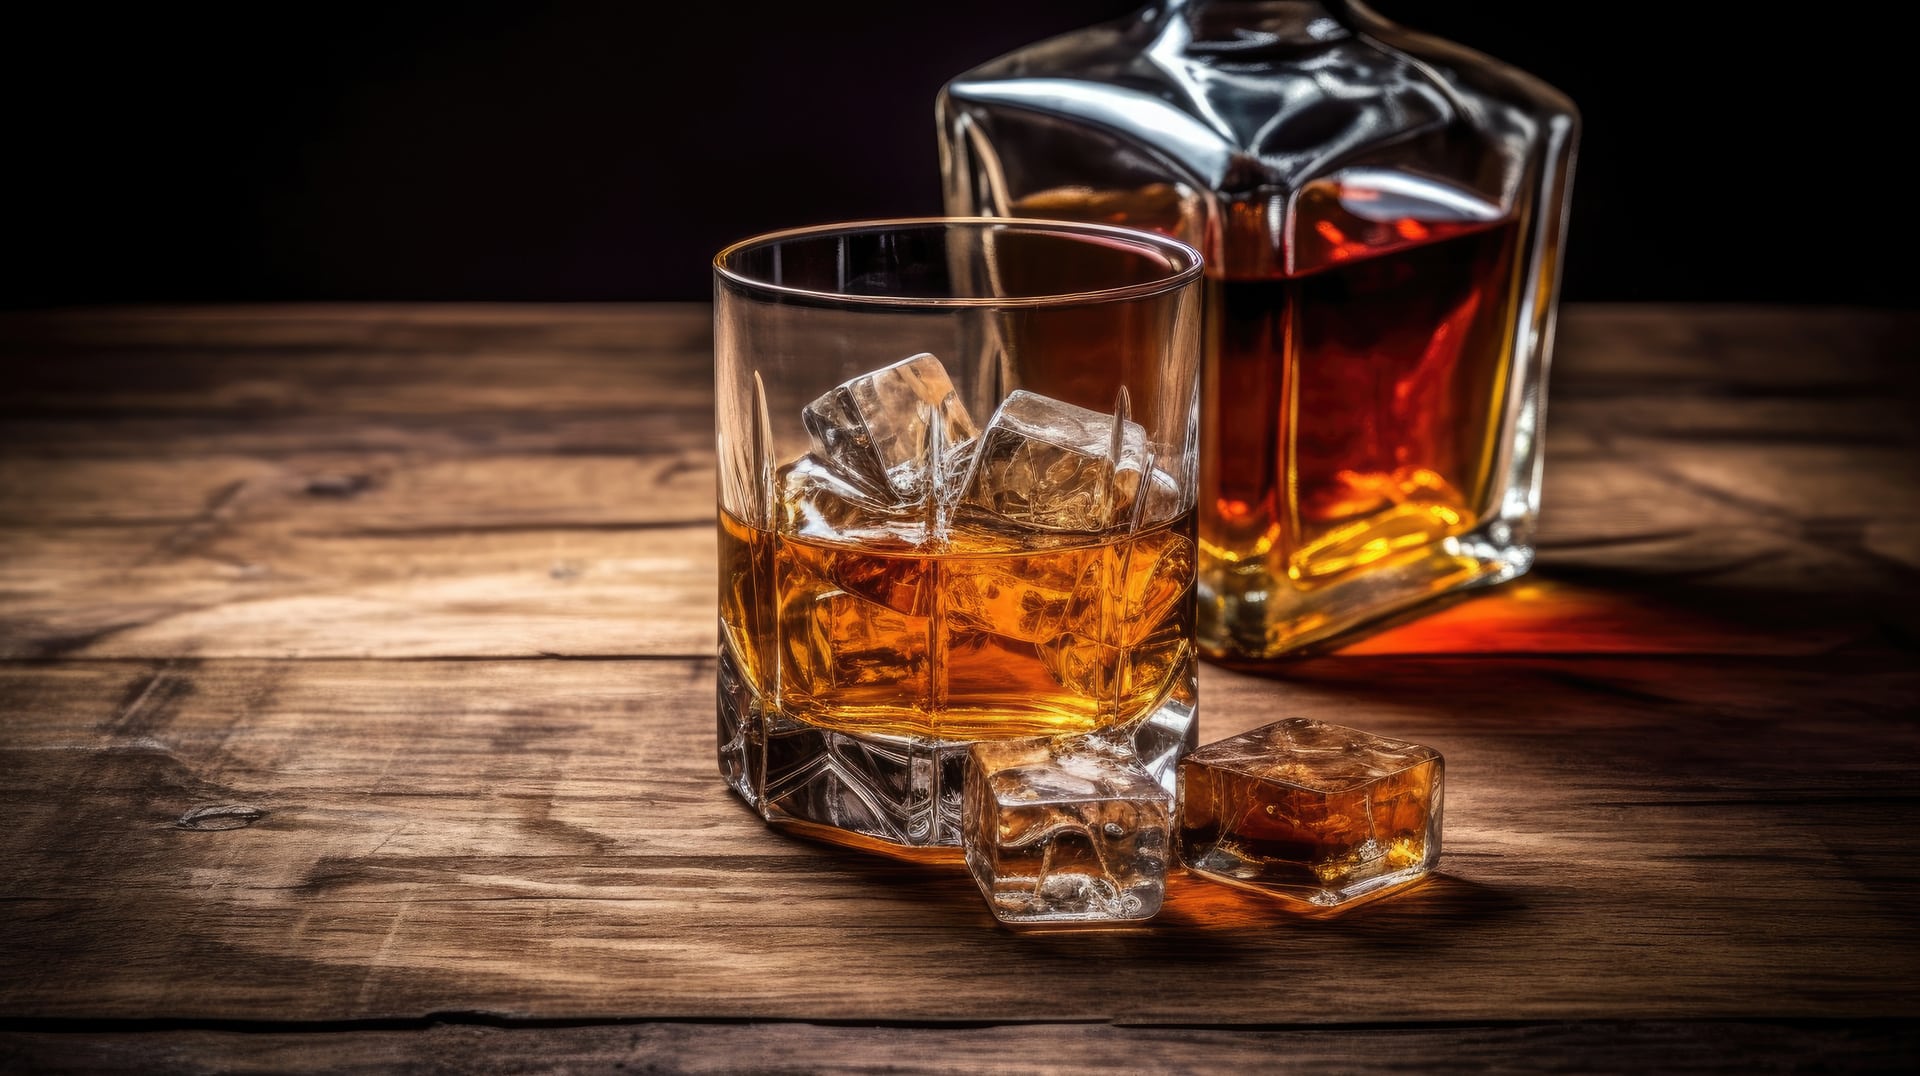 Dwie szklanki wypełnione aromatyczną whisky. Ich delikatnie pomarańczowe zabarwienie i błysk na powierzchni wskazują na wysoką jakość tego trunku